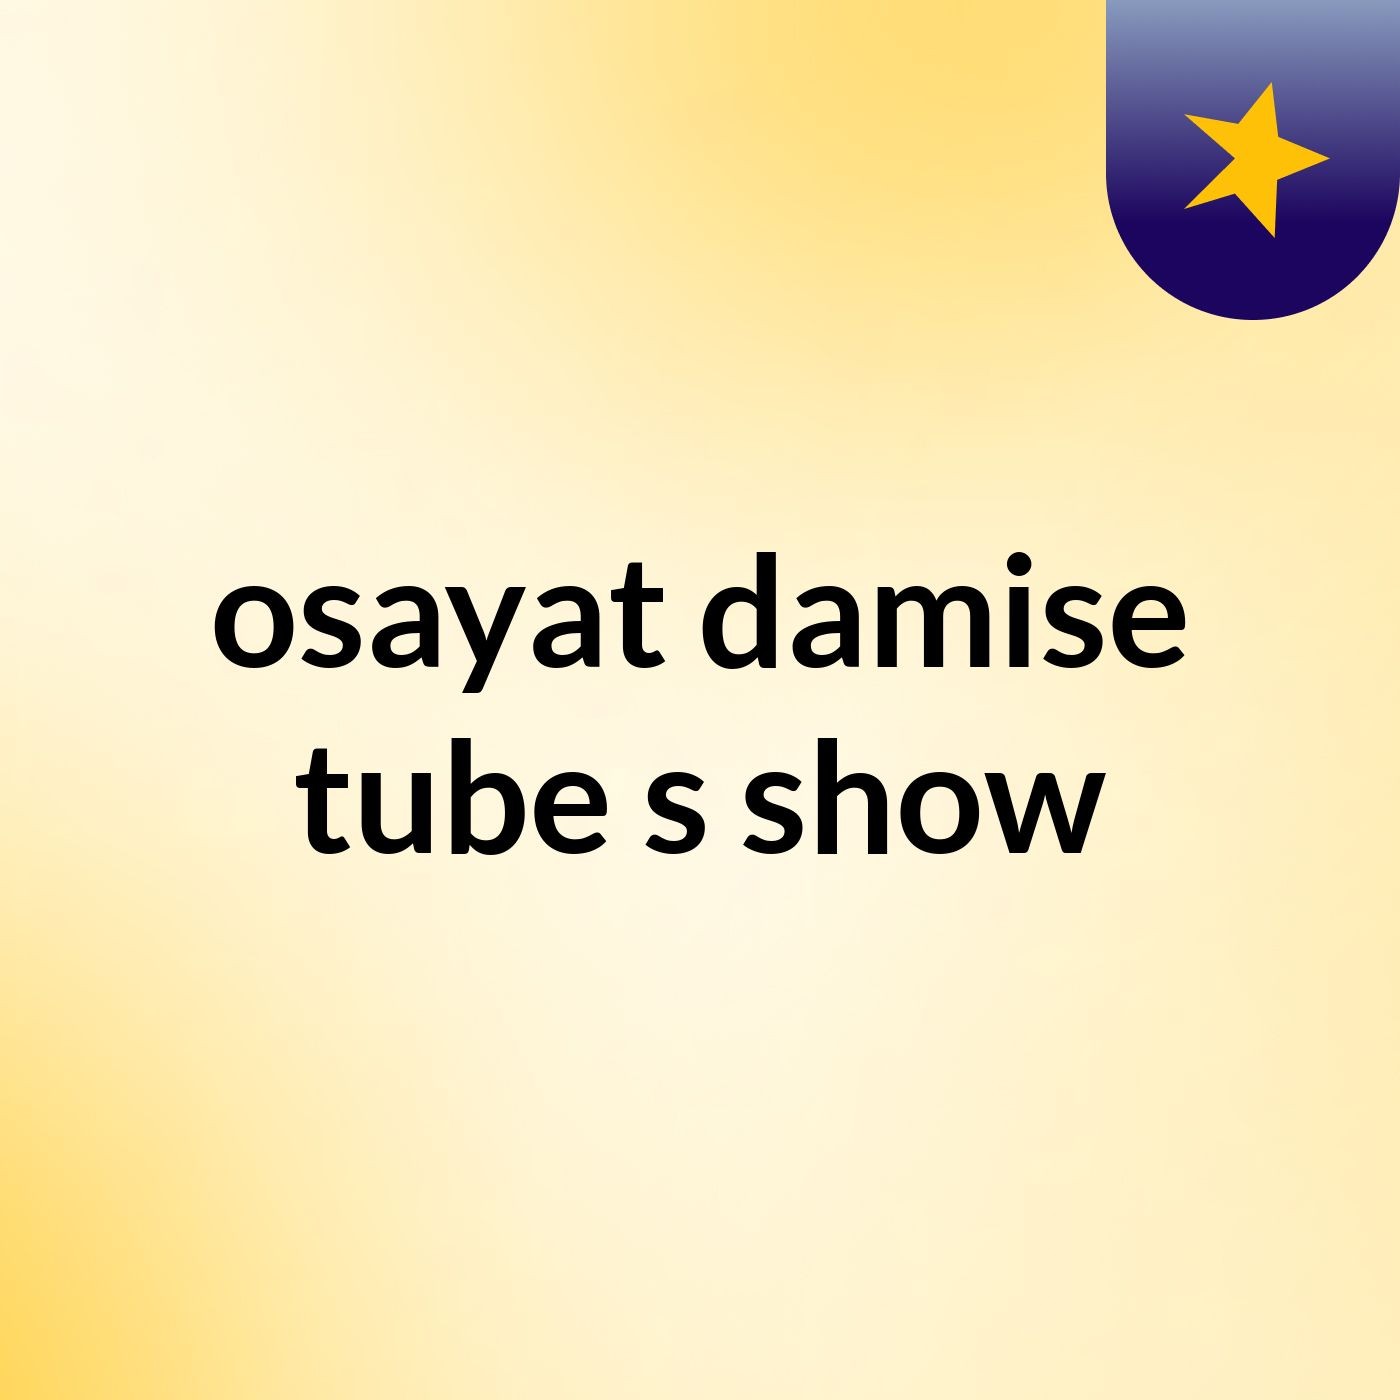 osayat damise tube's show